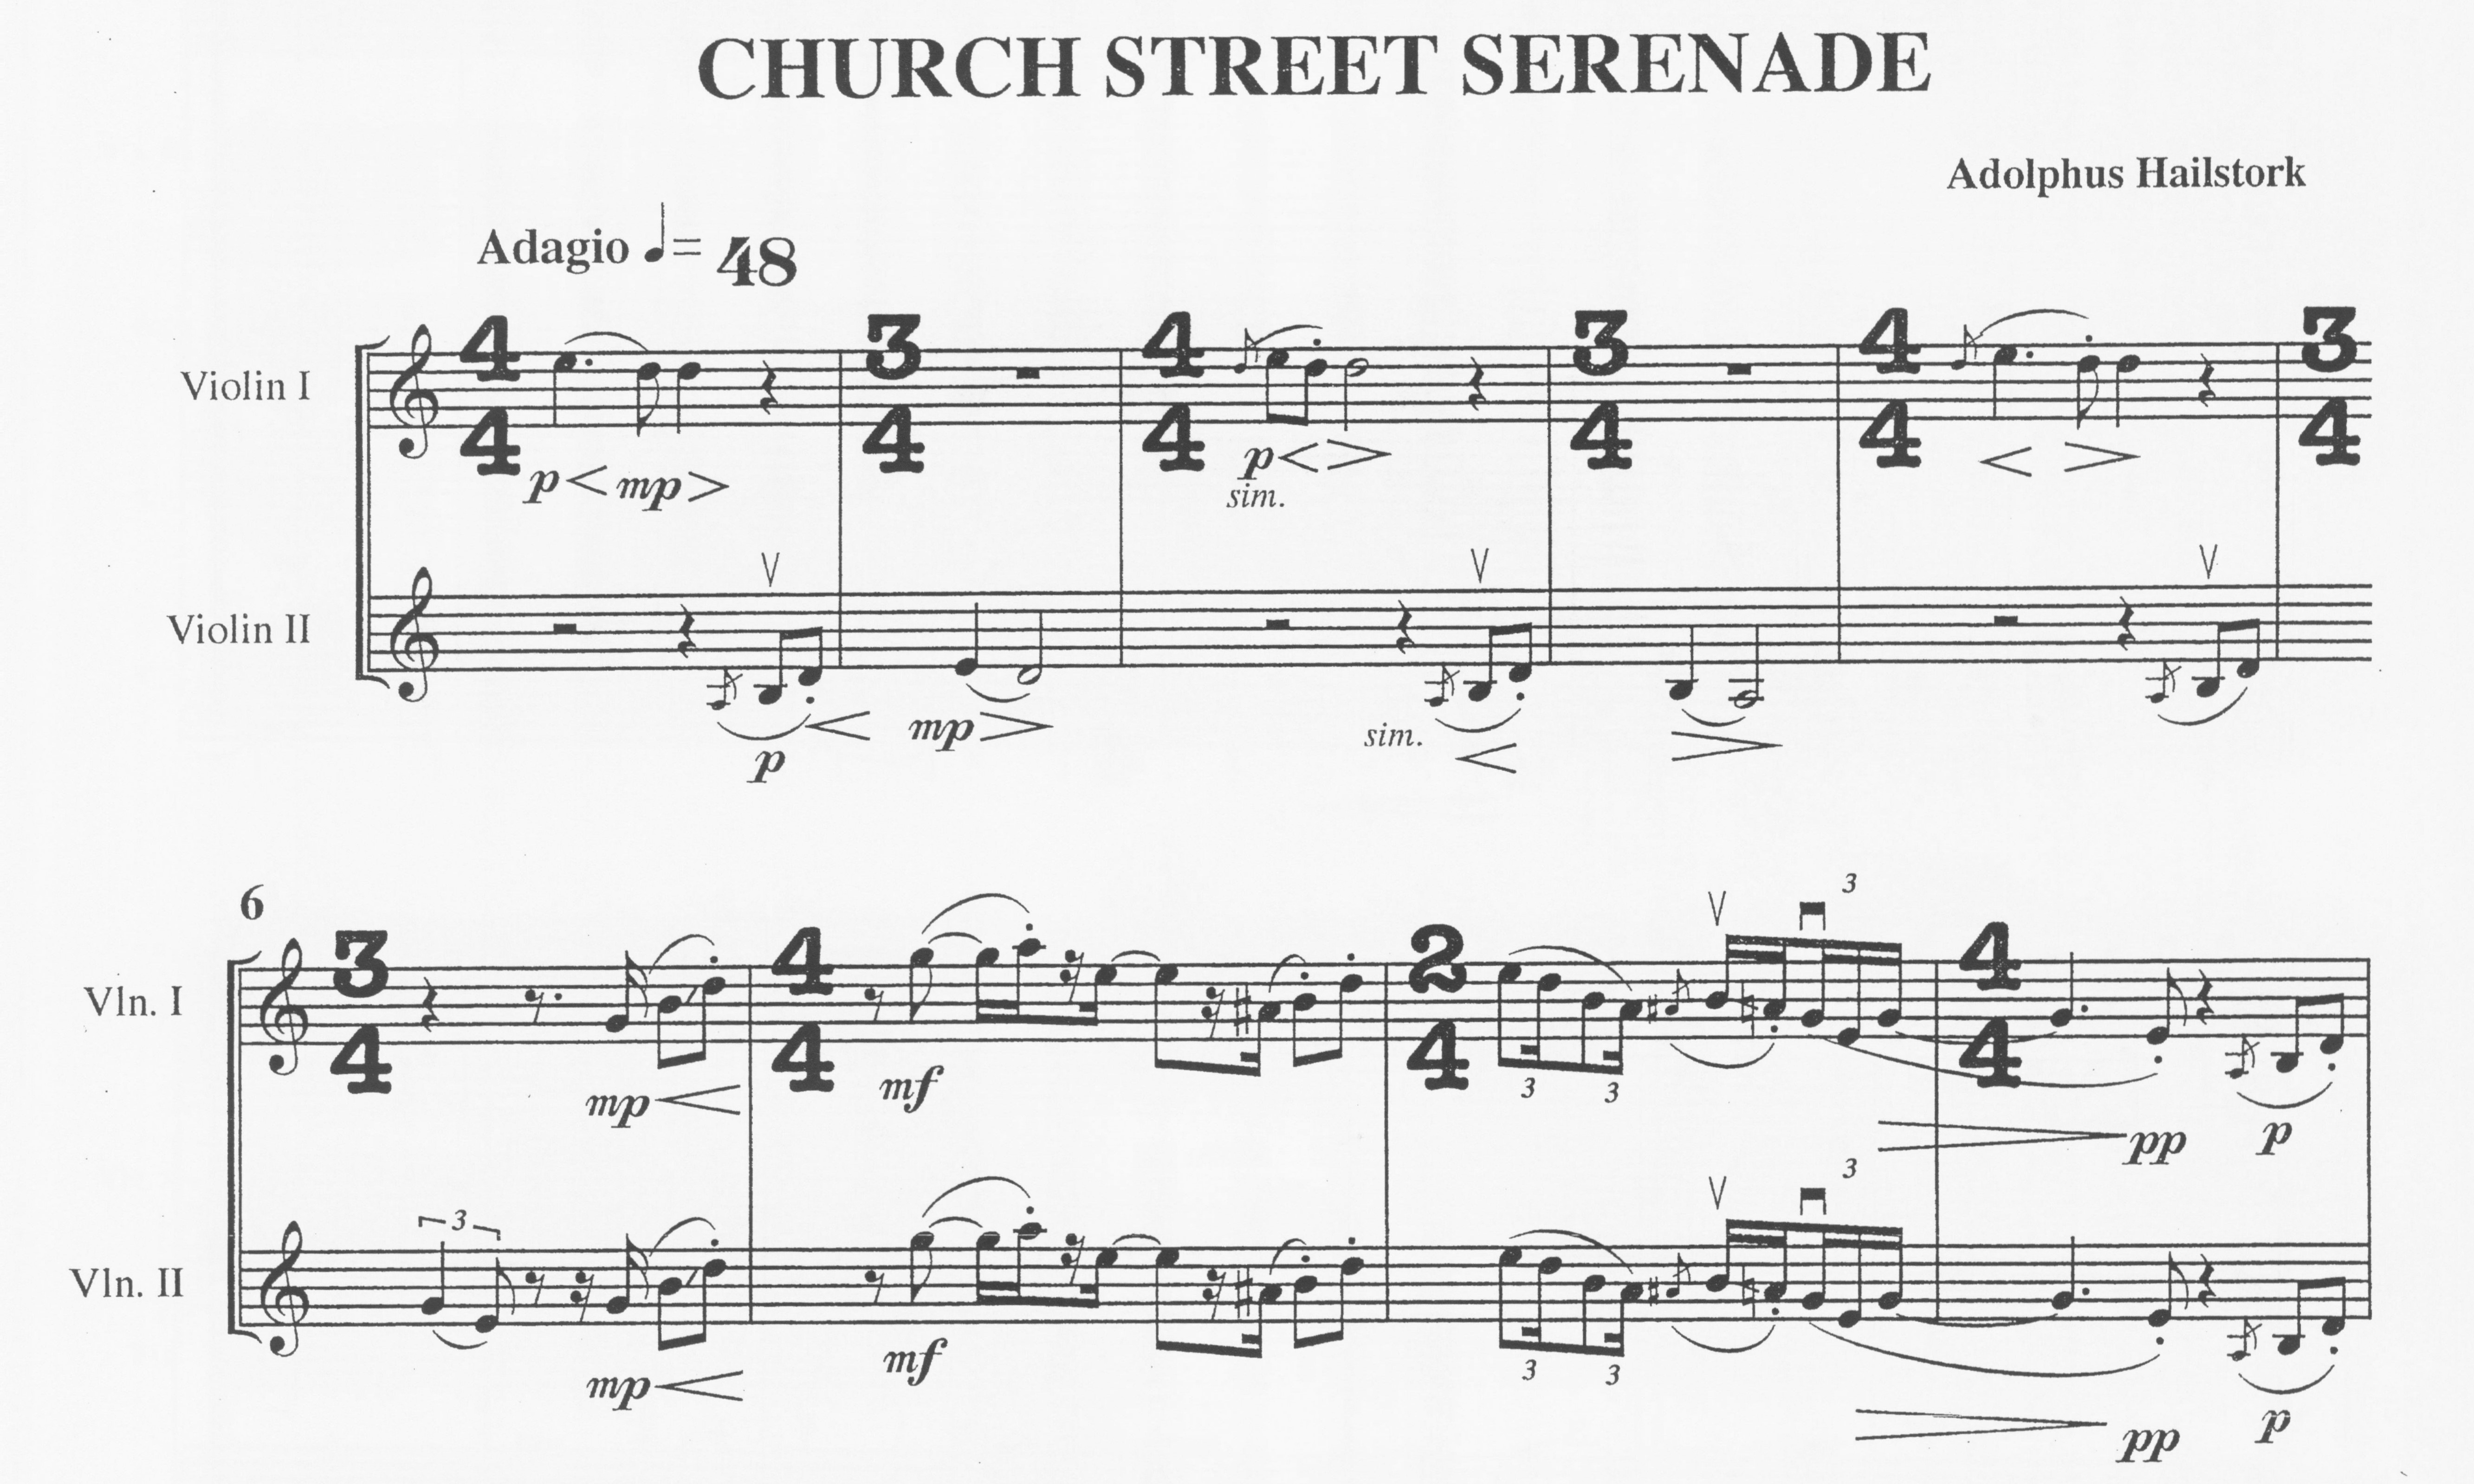 Church Street Serenade - Adolphus Hailstork